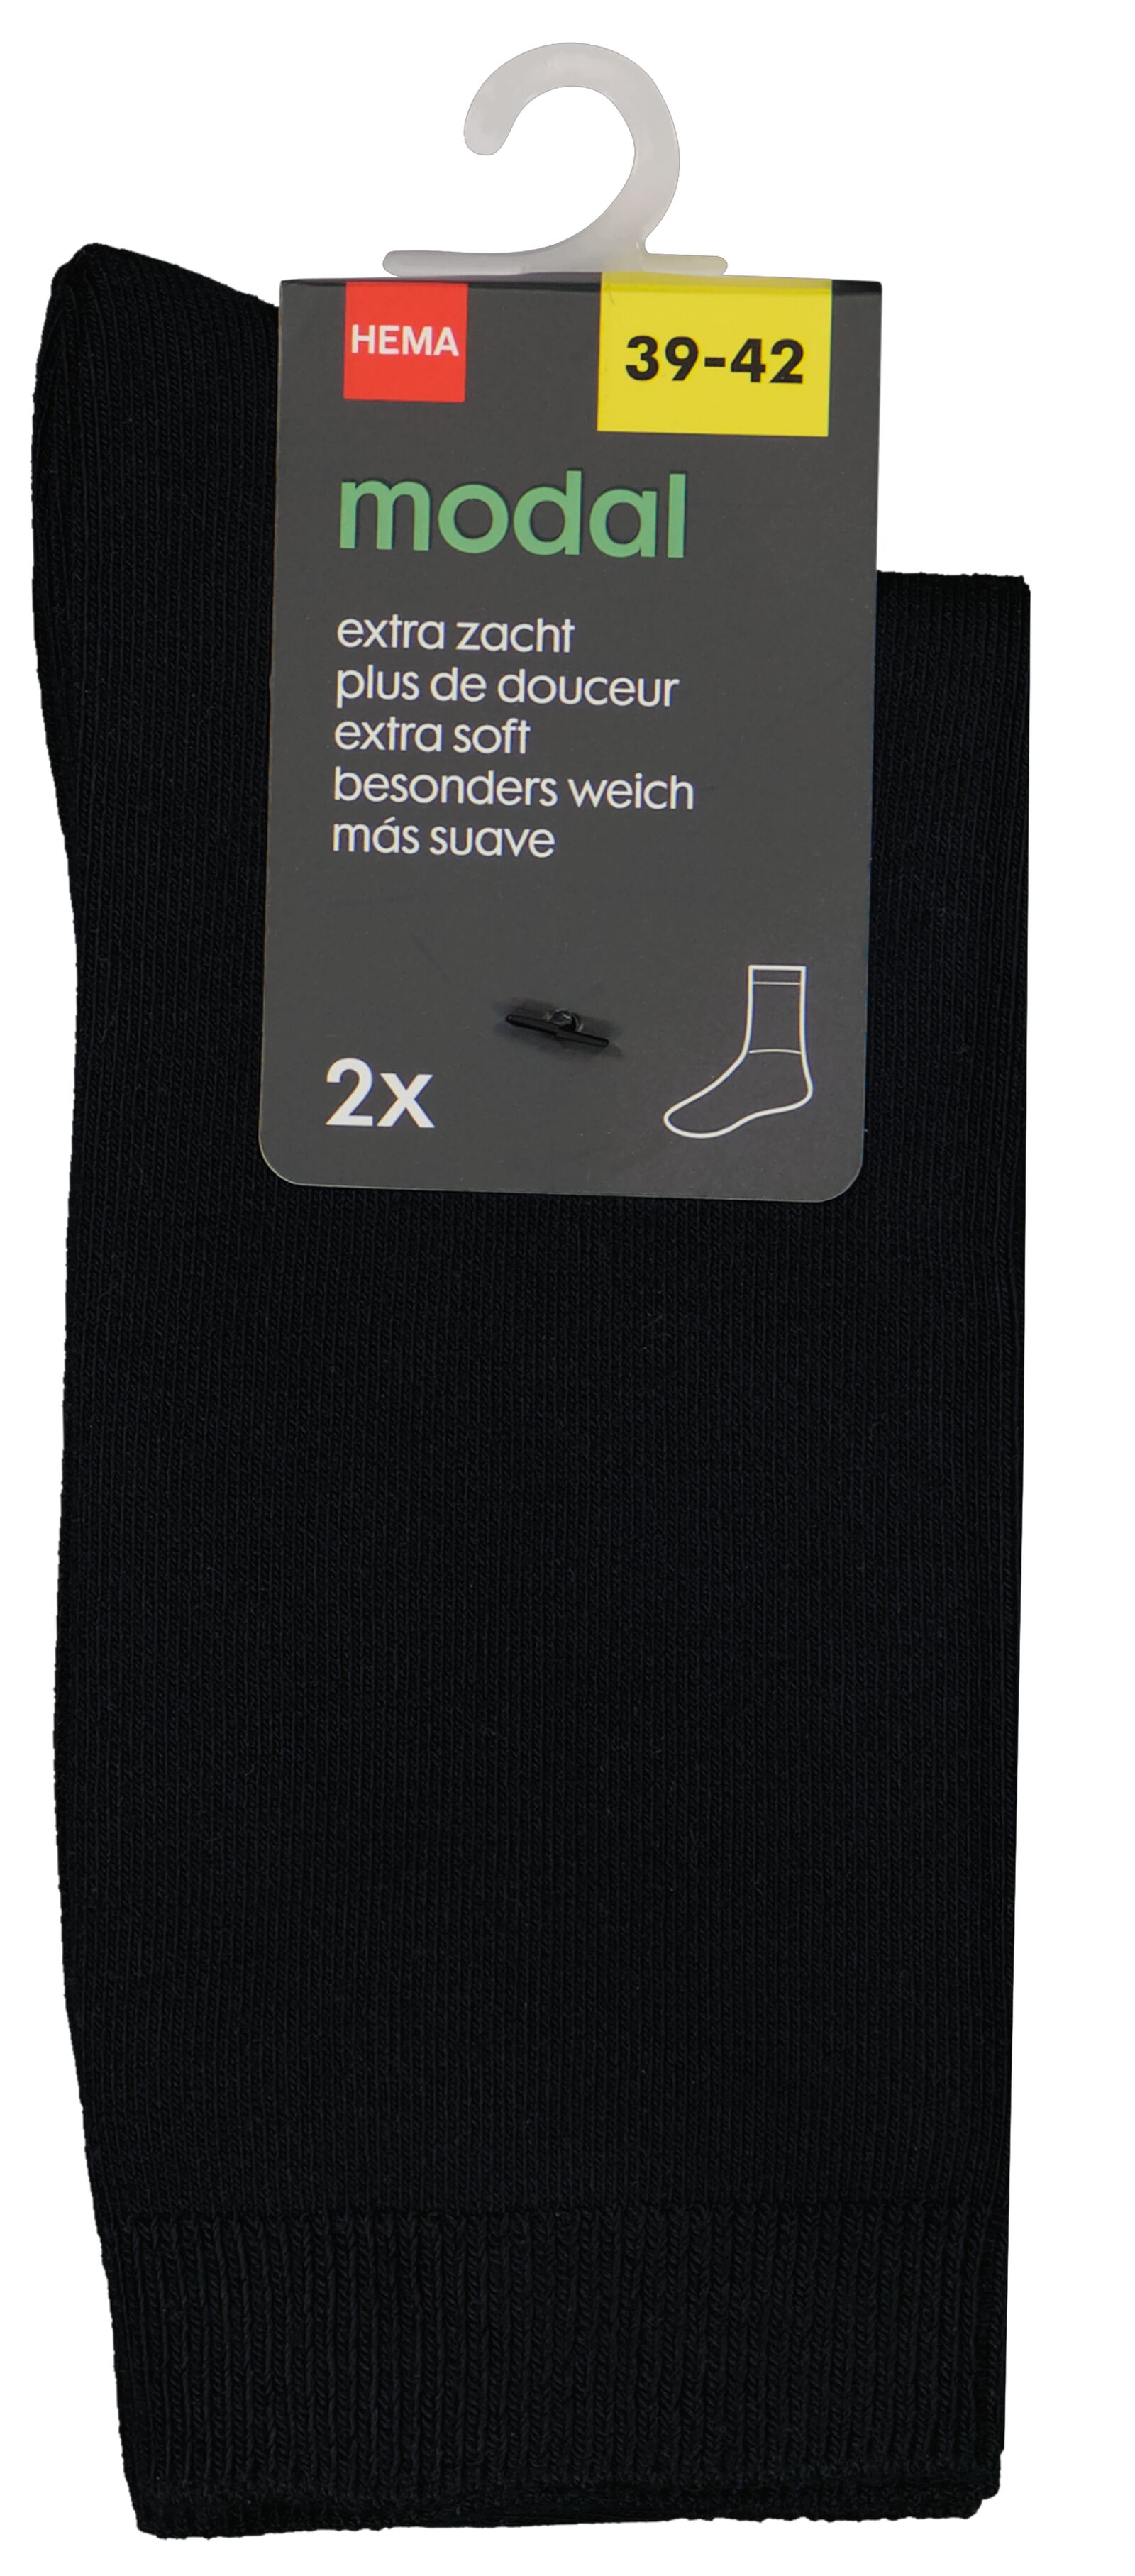 2er-Pack Damen-Socken mit Modal schwarz 39/42 - 4250517 - HEMA